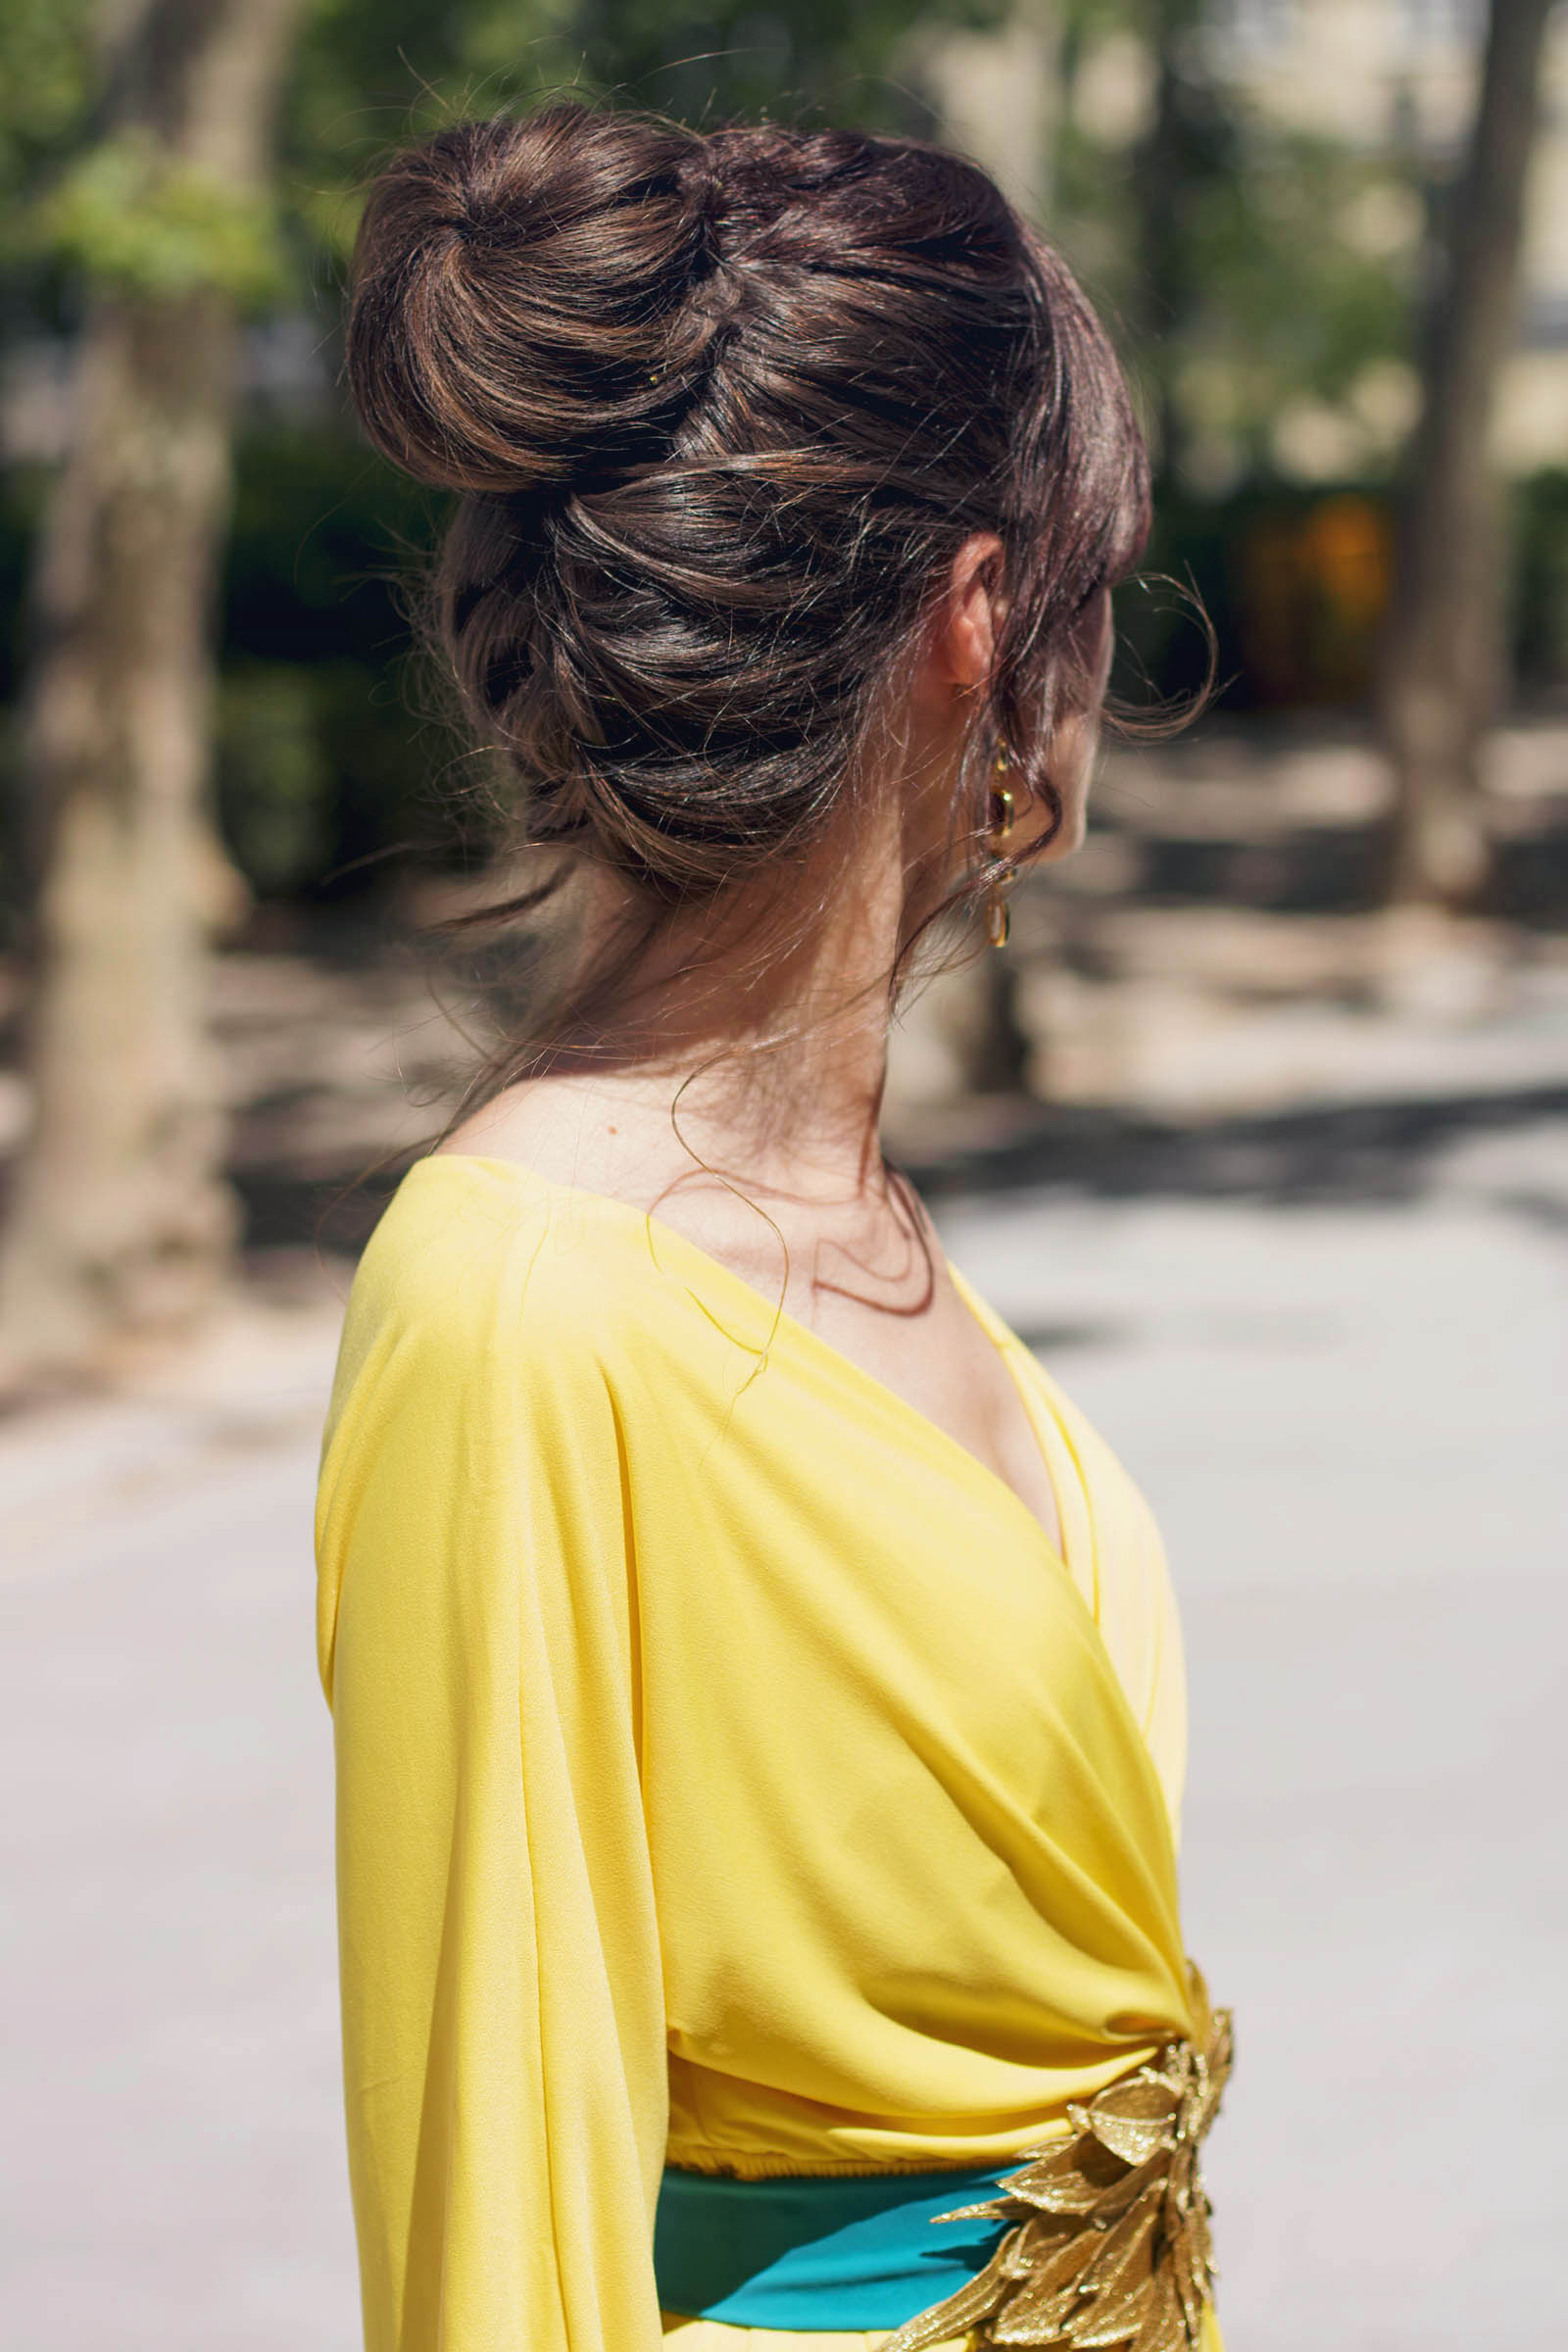 Look invitada noche: el vestido kimono amarillo | Invitada Perfecta